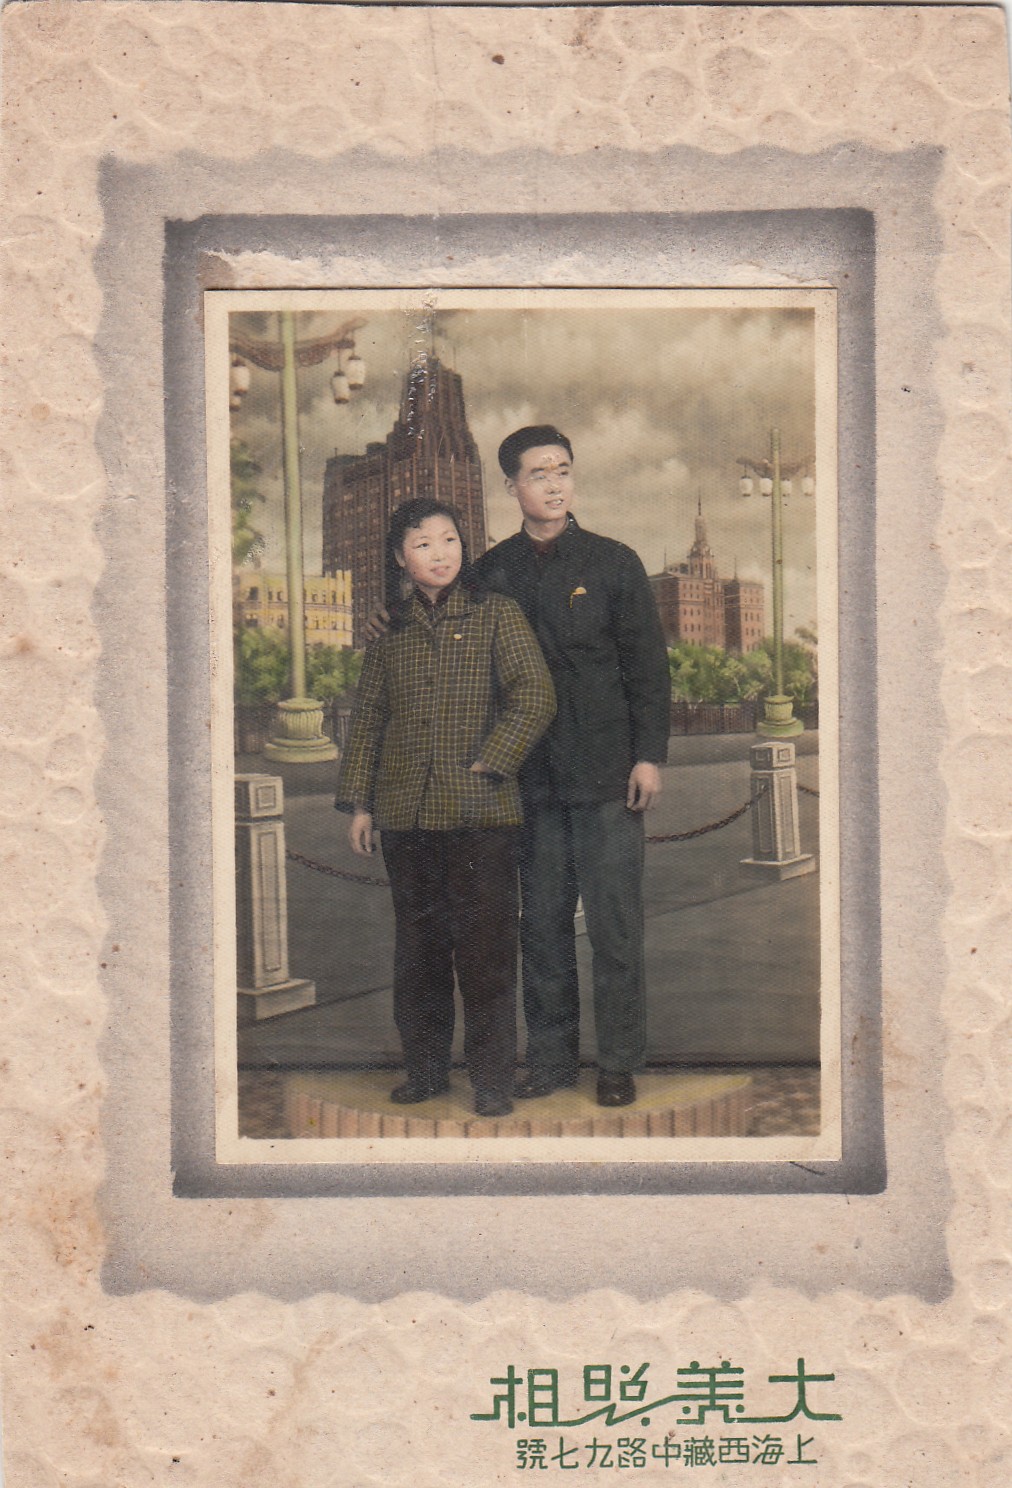 1956年父母摄于西藏中路97号大美照相馆定婚照.jpg